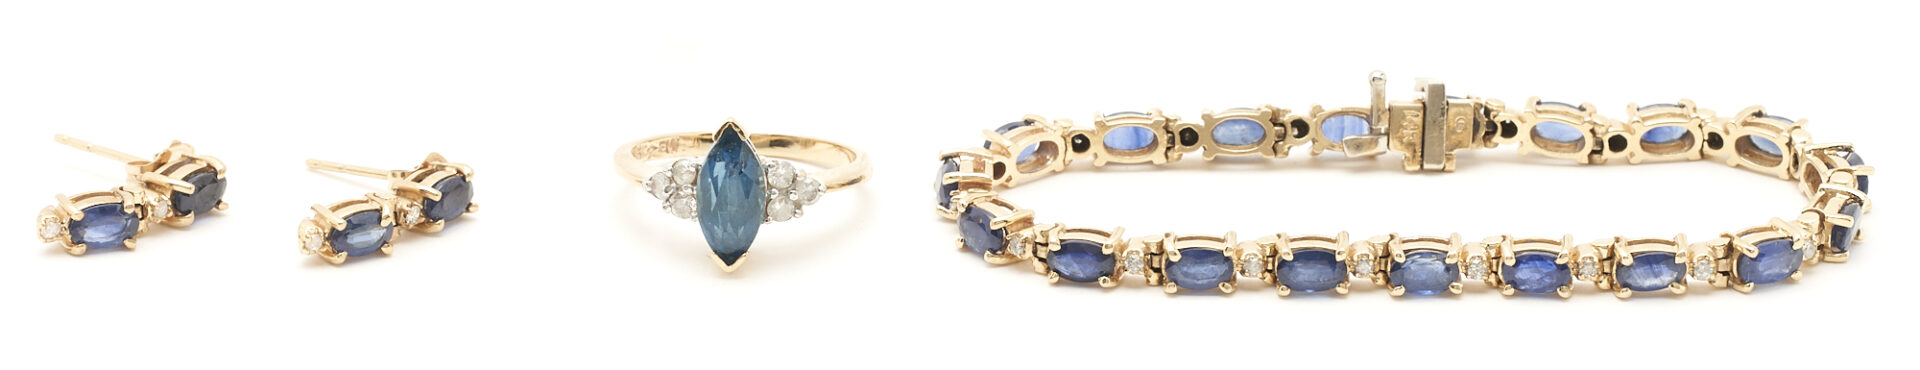 Lot 74: 14K Gemstone & Diamond Ring, Bracelet, and Earrings